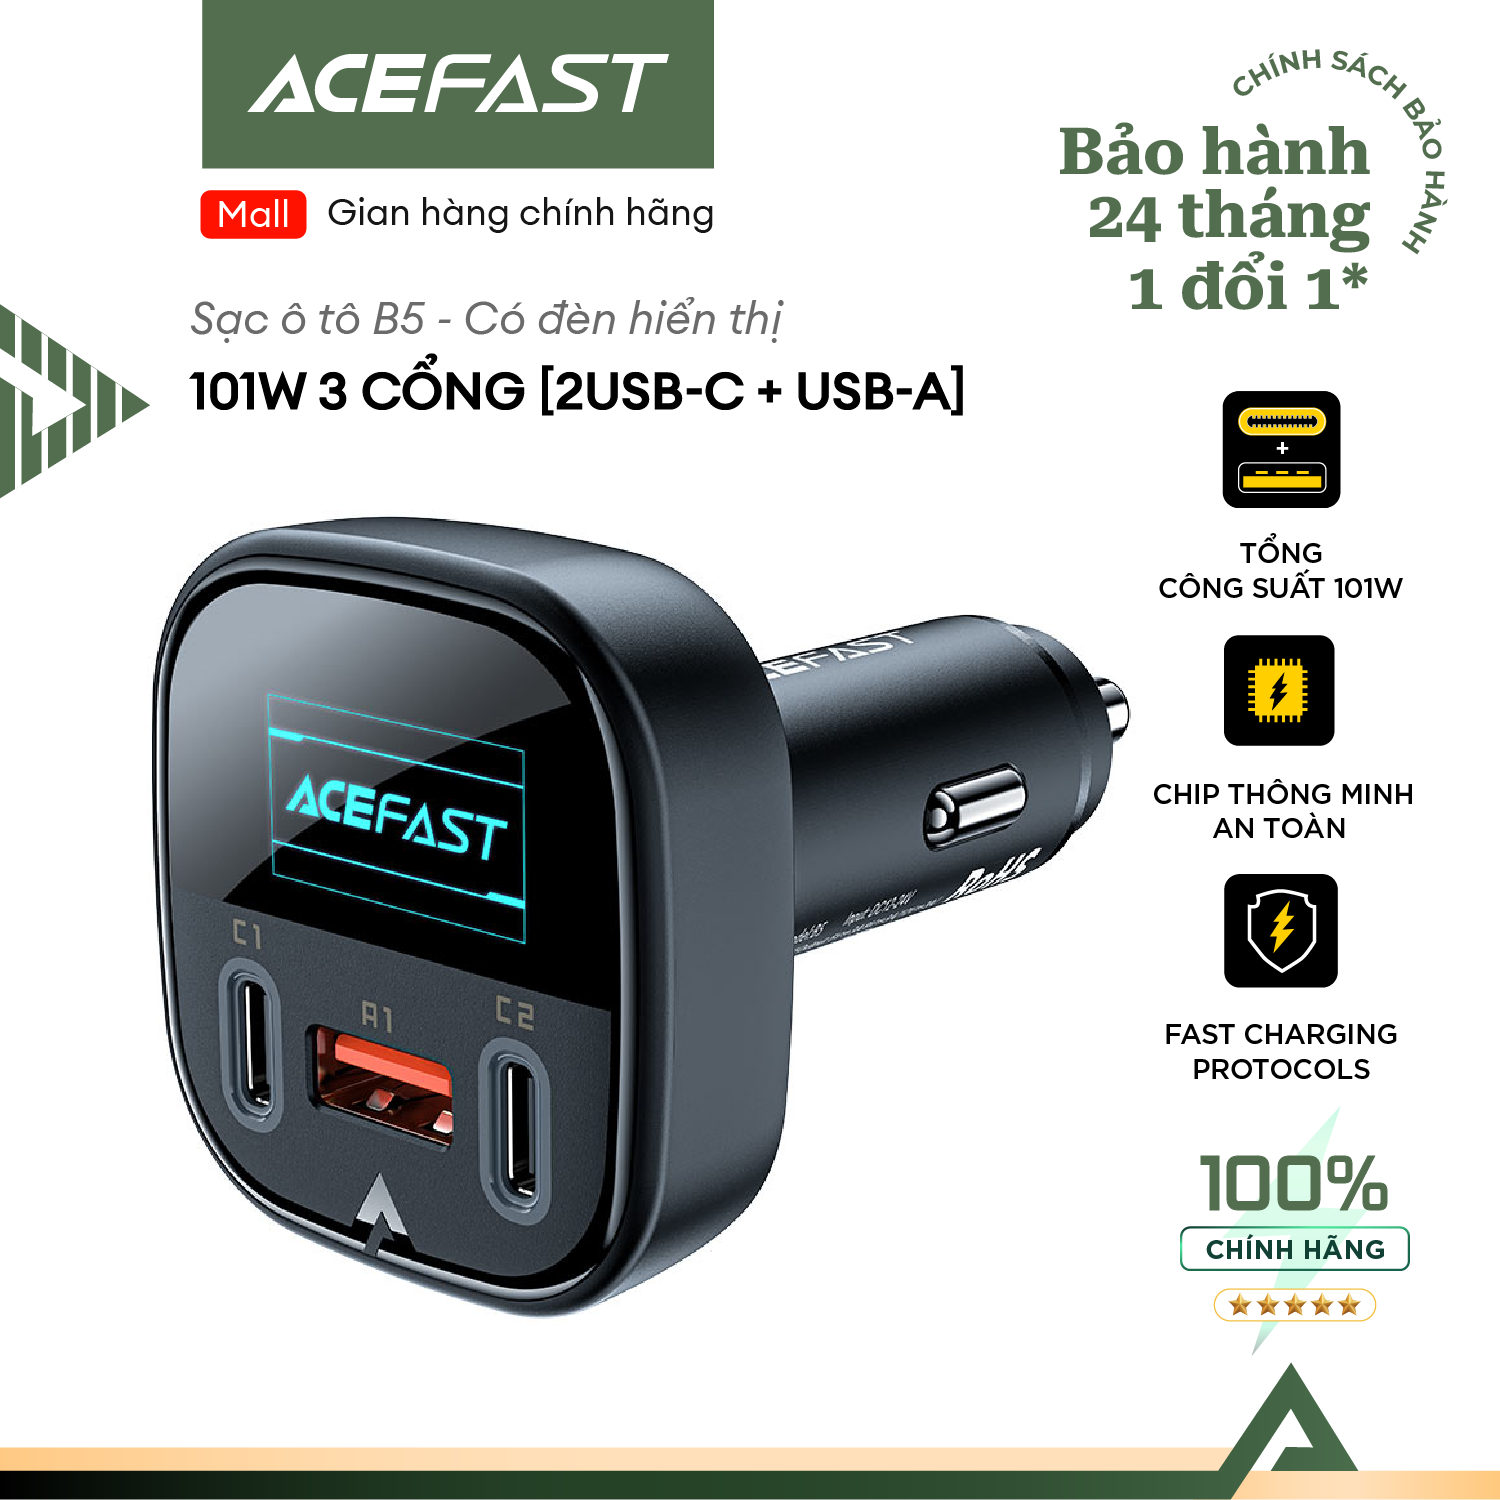 Sạc ô tô Acefast 101W 3 cổng 2xUSB-C + USB-A có đèn hiển thị - B5 Hàng chính hãng Acefast